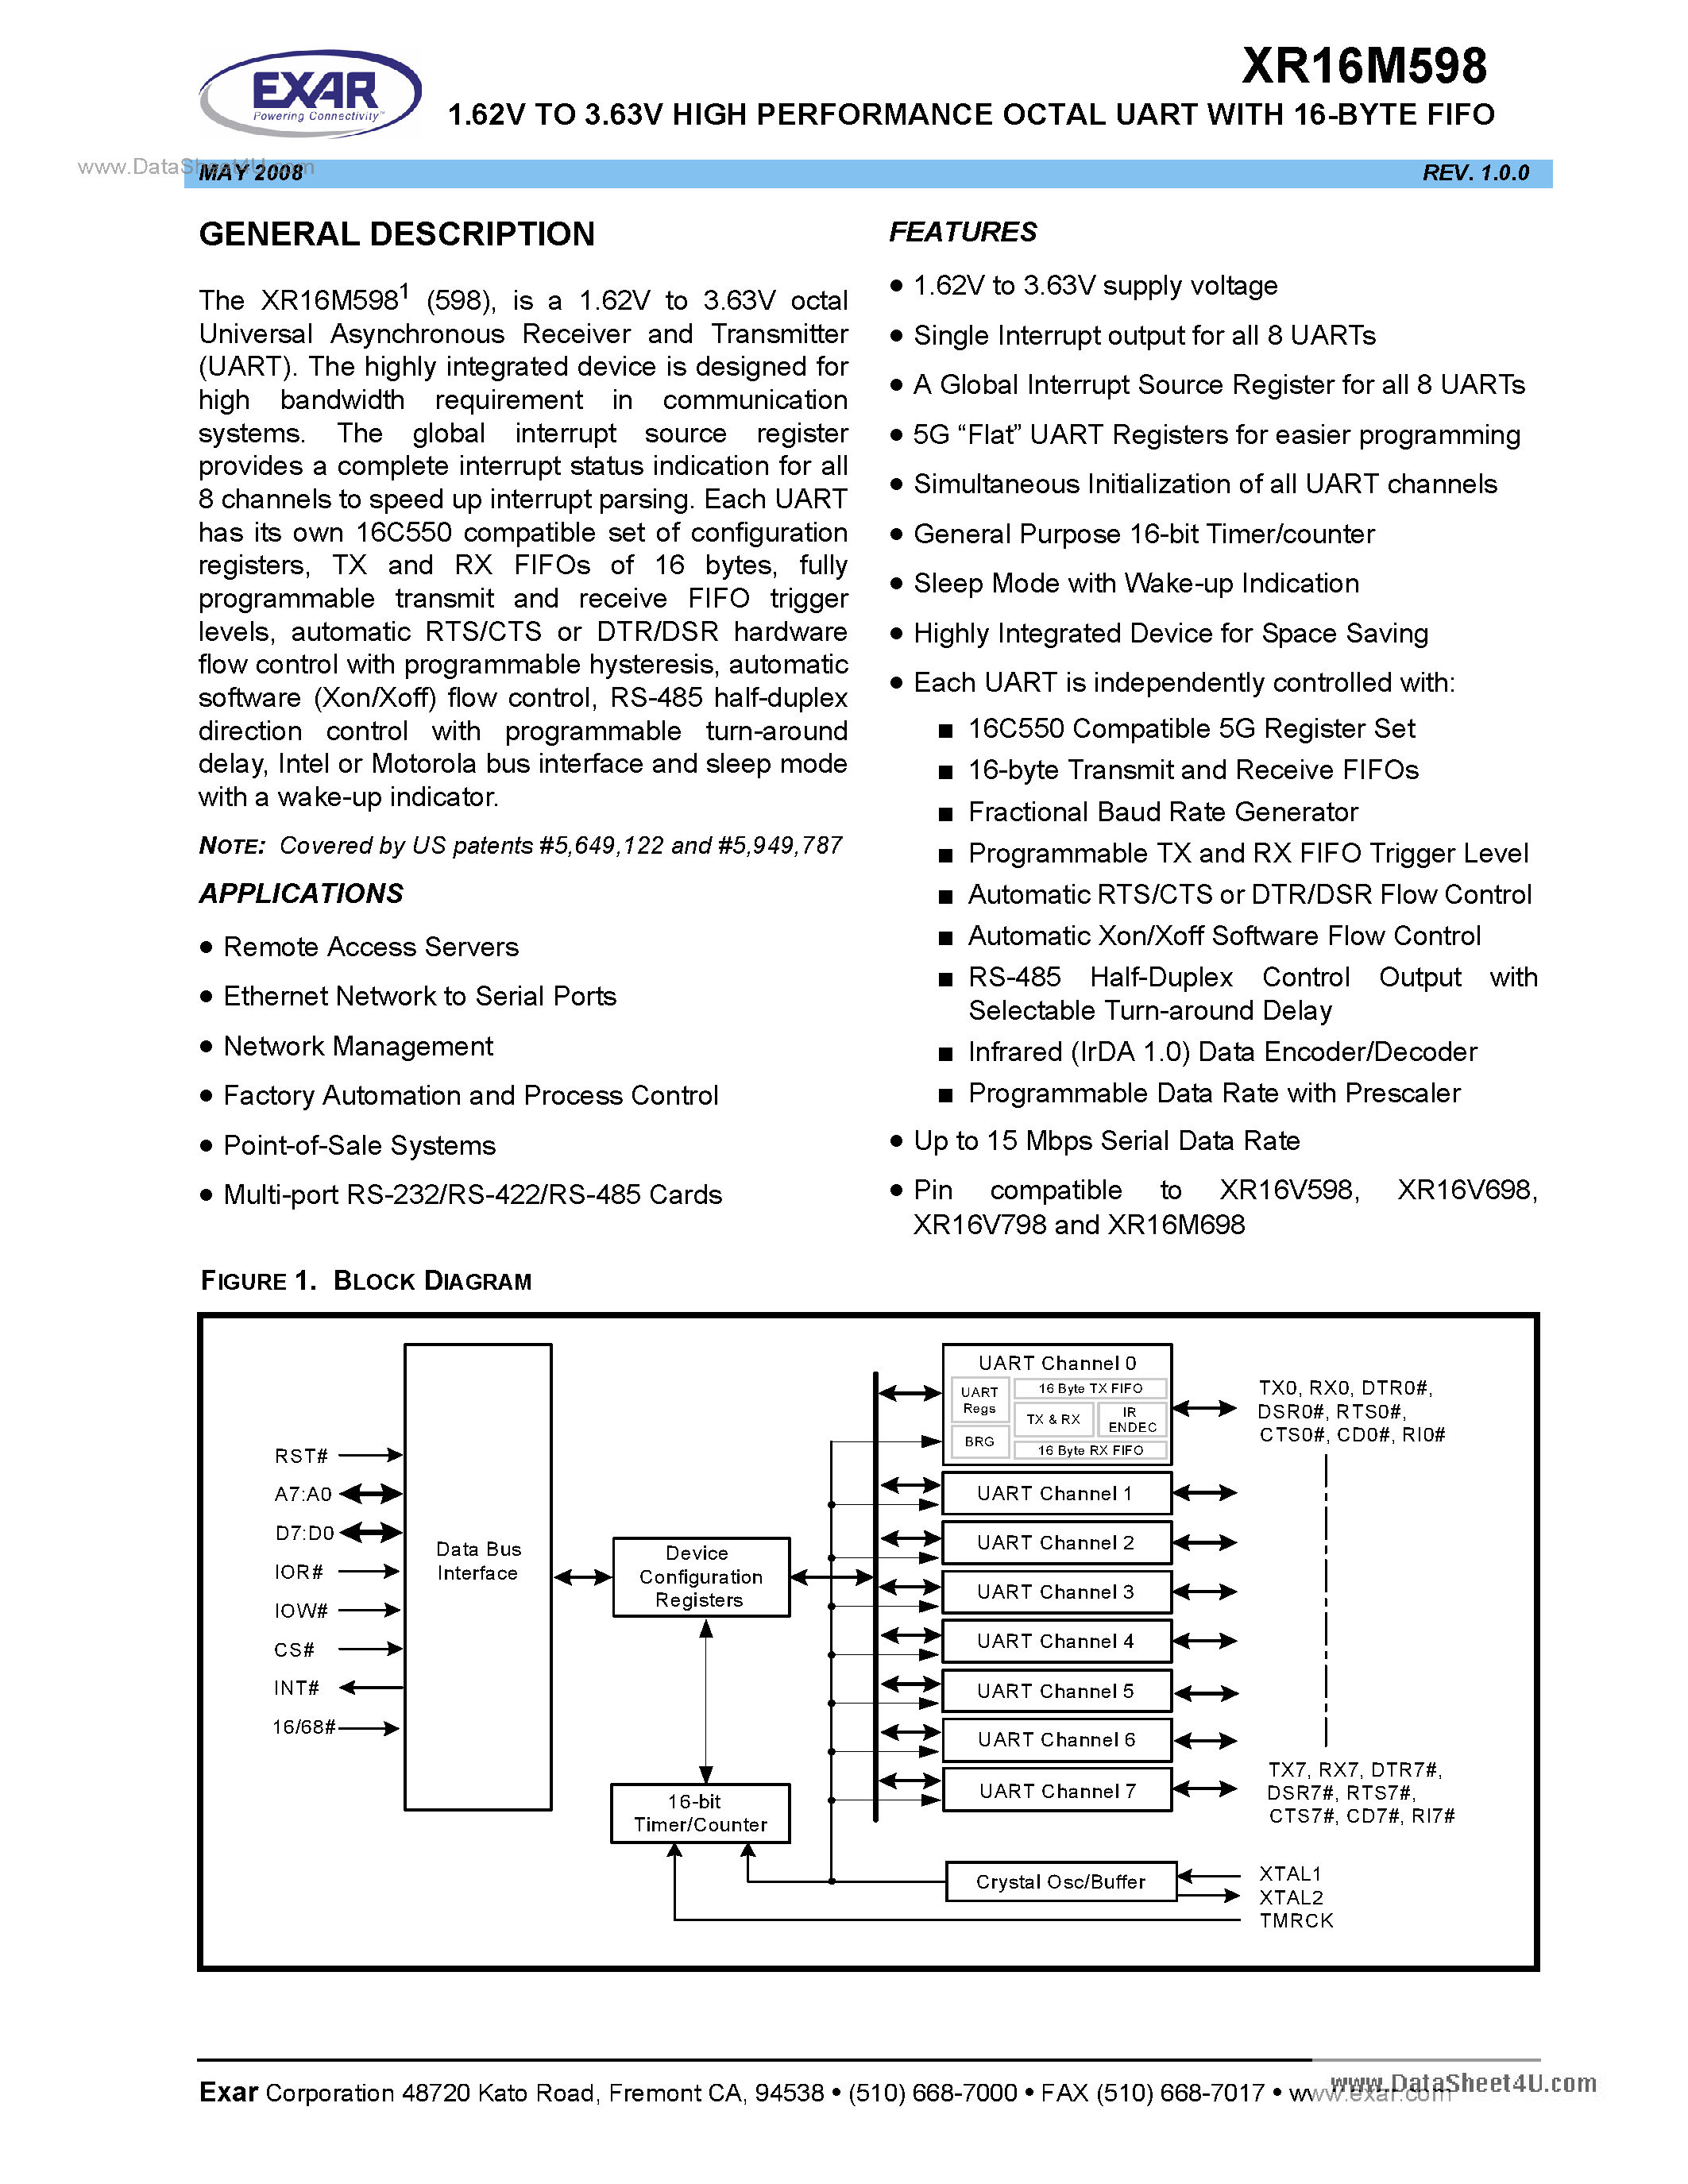 Datasheet XR16M598 - 1.62V To 3.63V High Performance Octal UART page 1